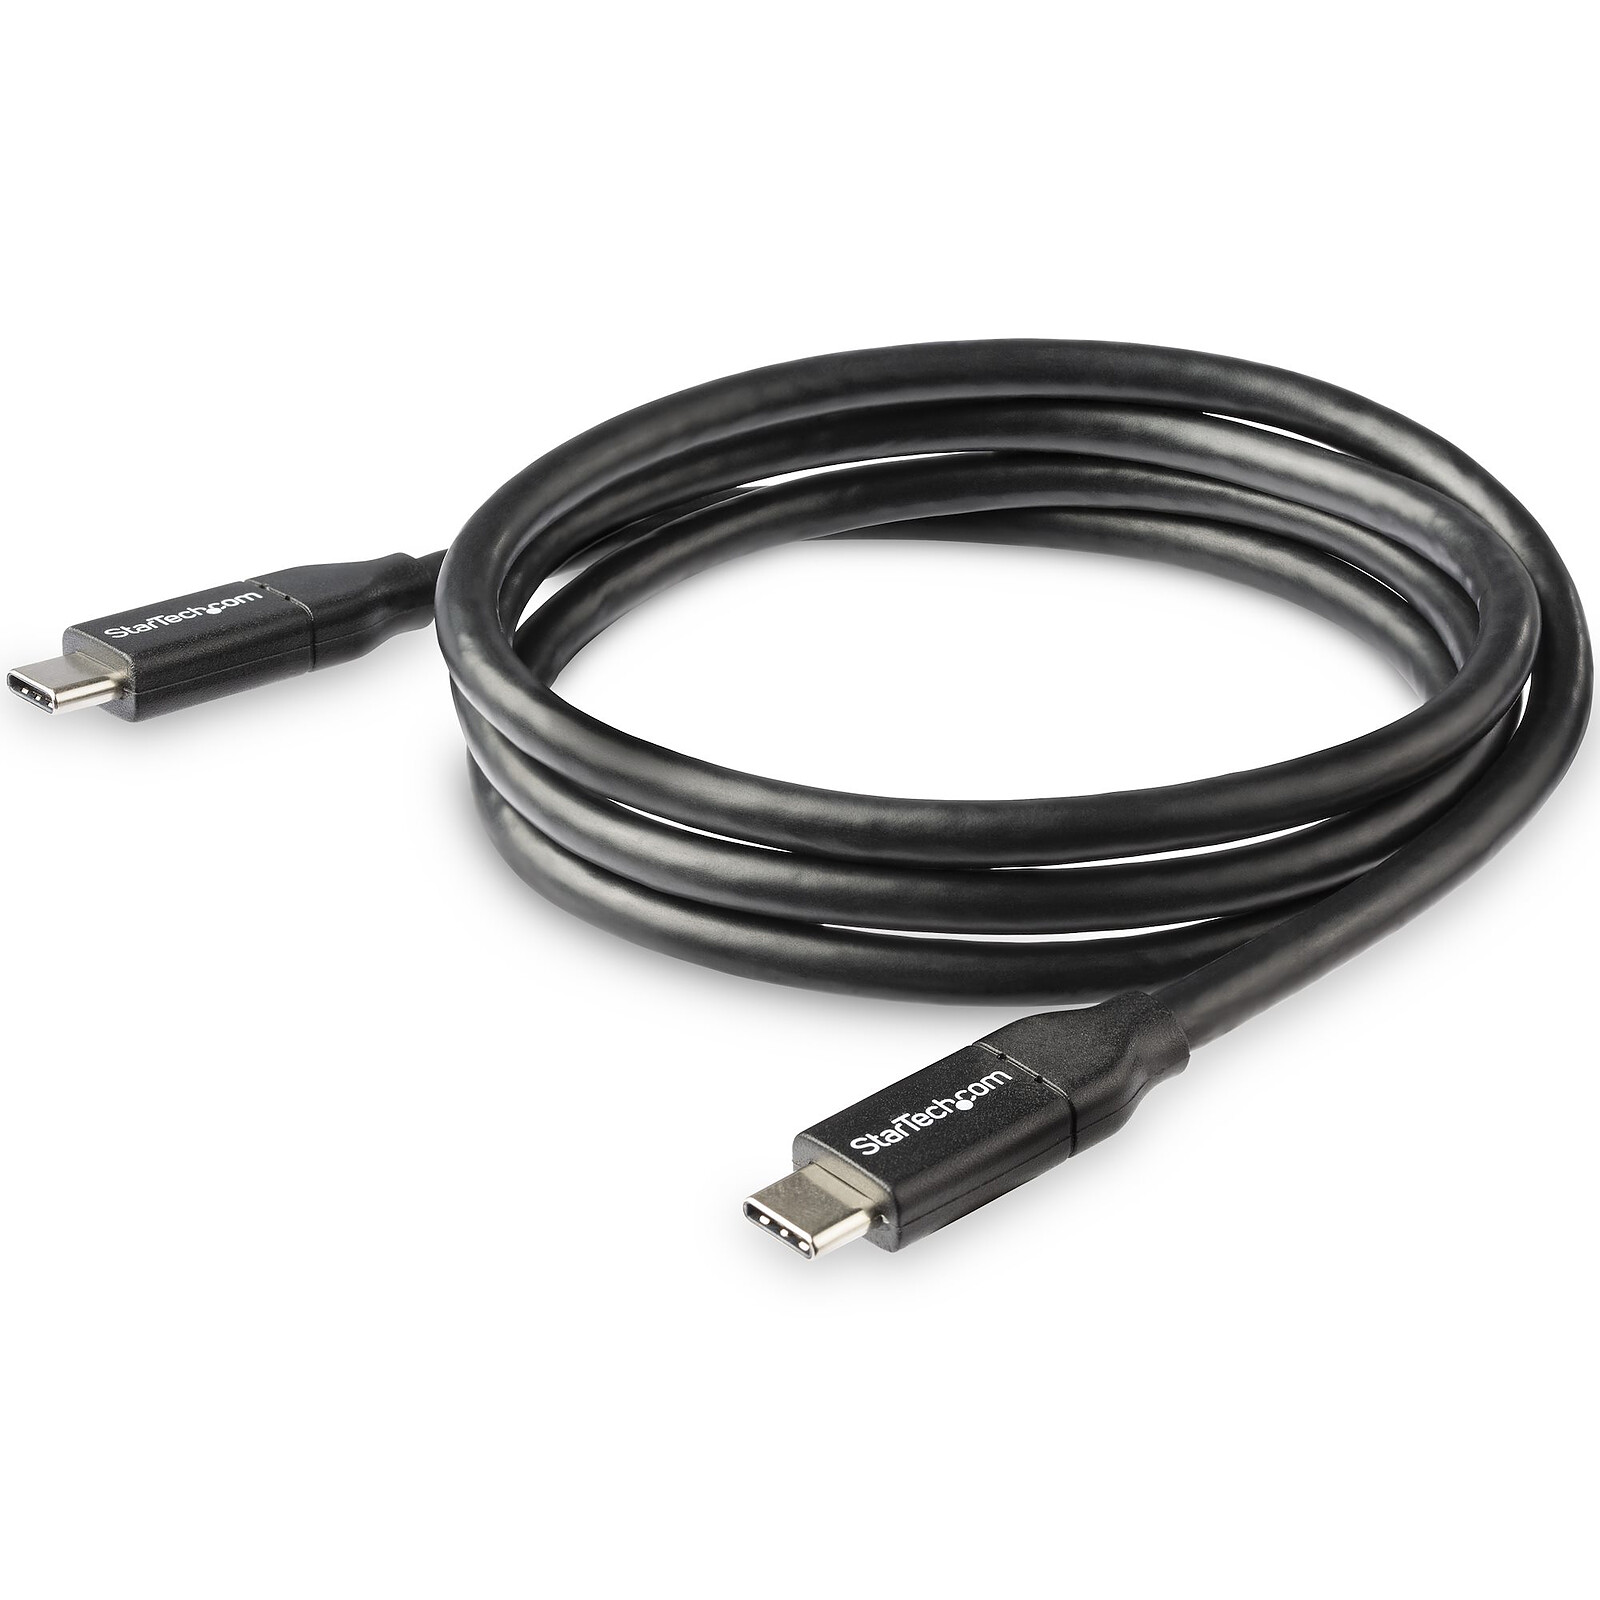 Startech : CABLE USB 2.0 USB-C USB-C de 2 M - M/M - NOIR